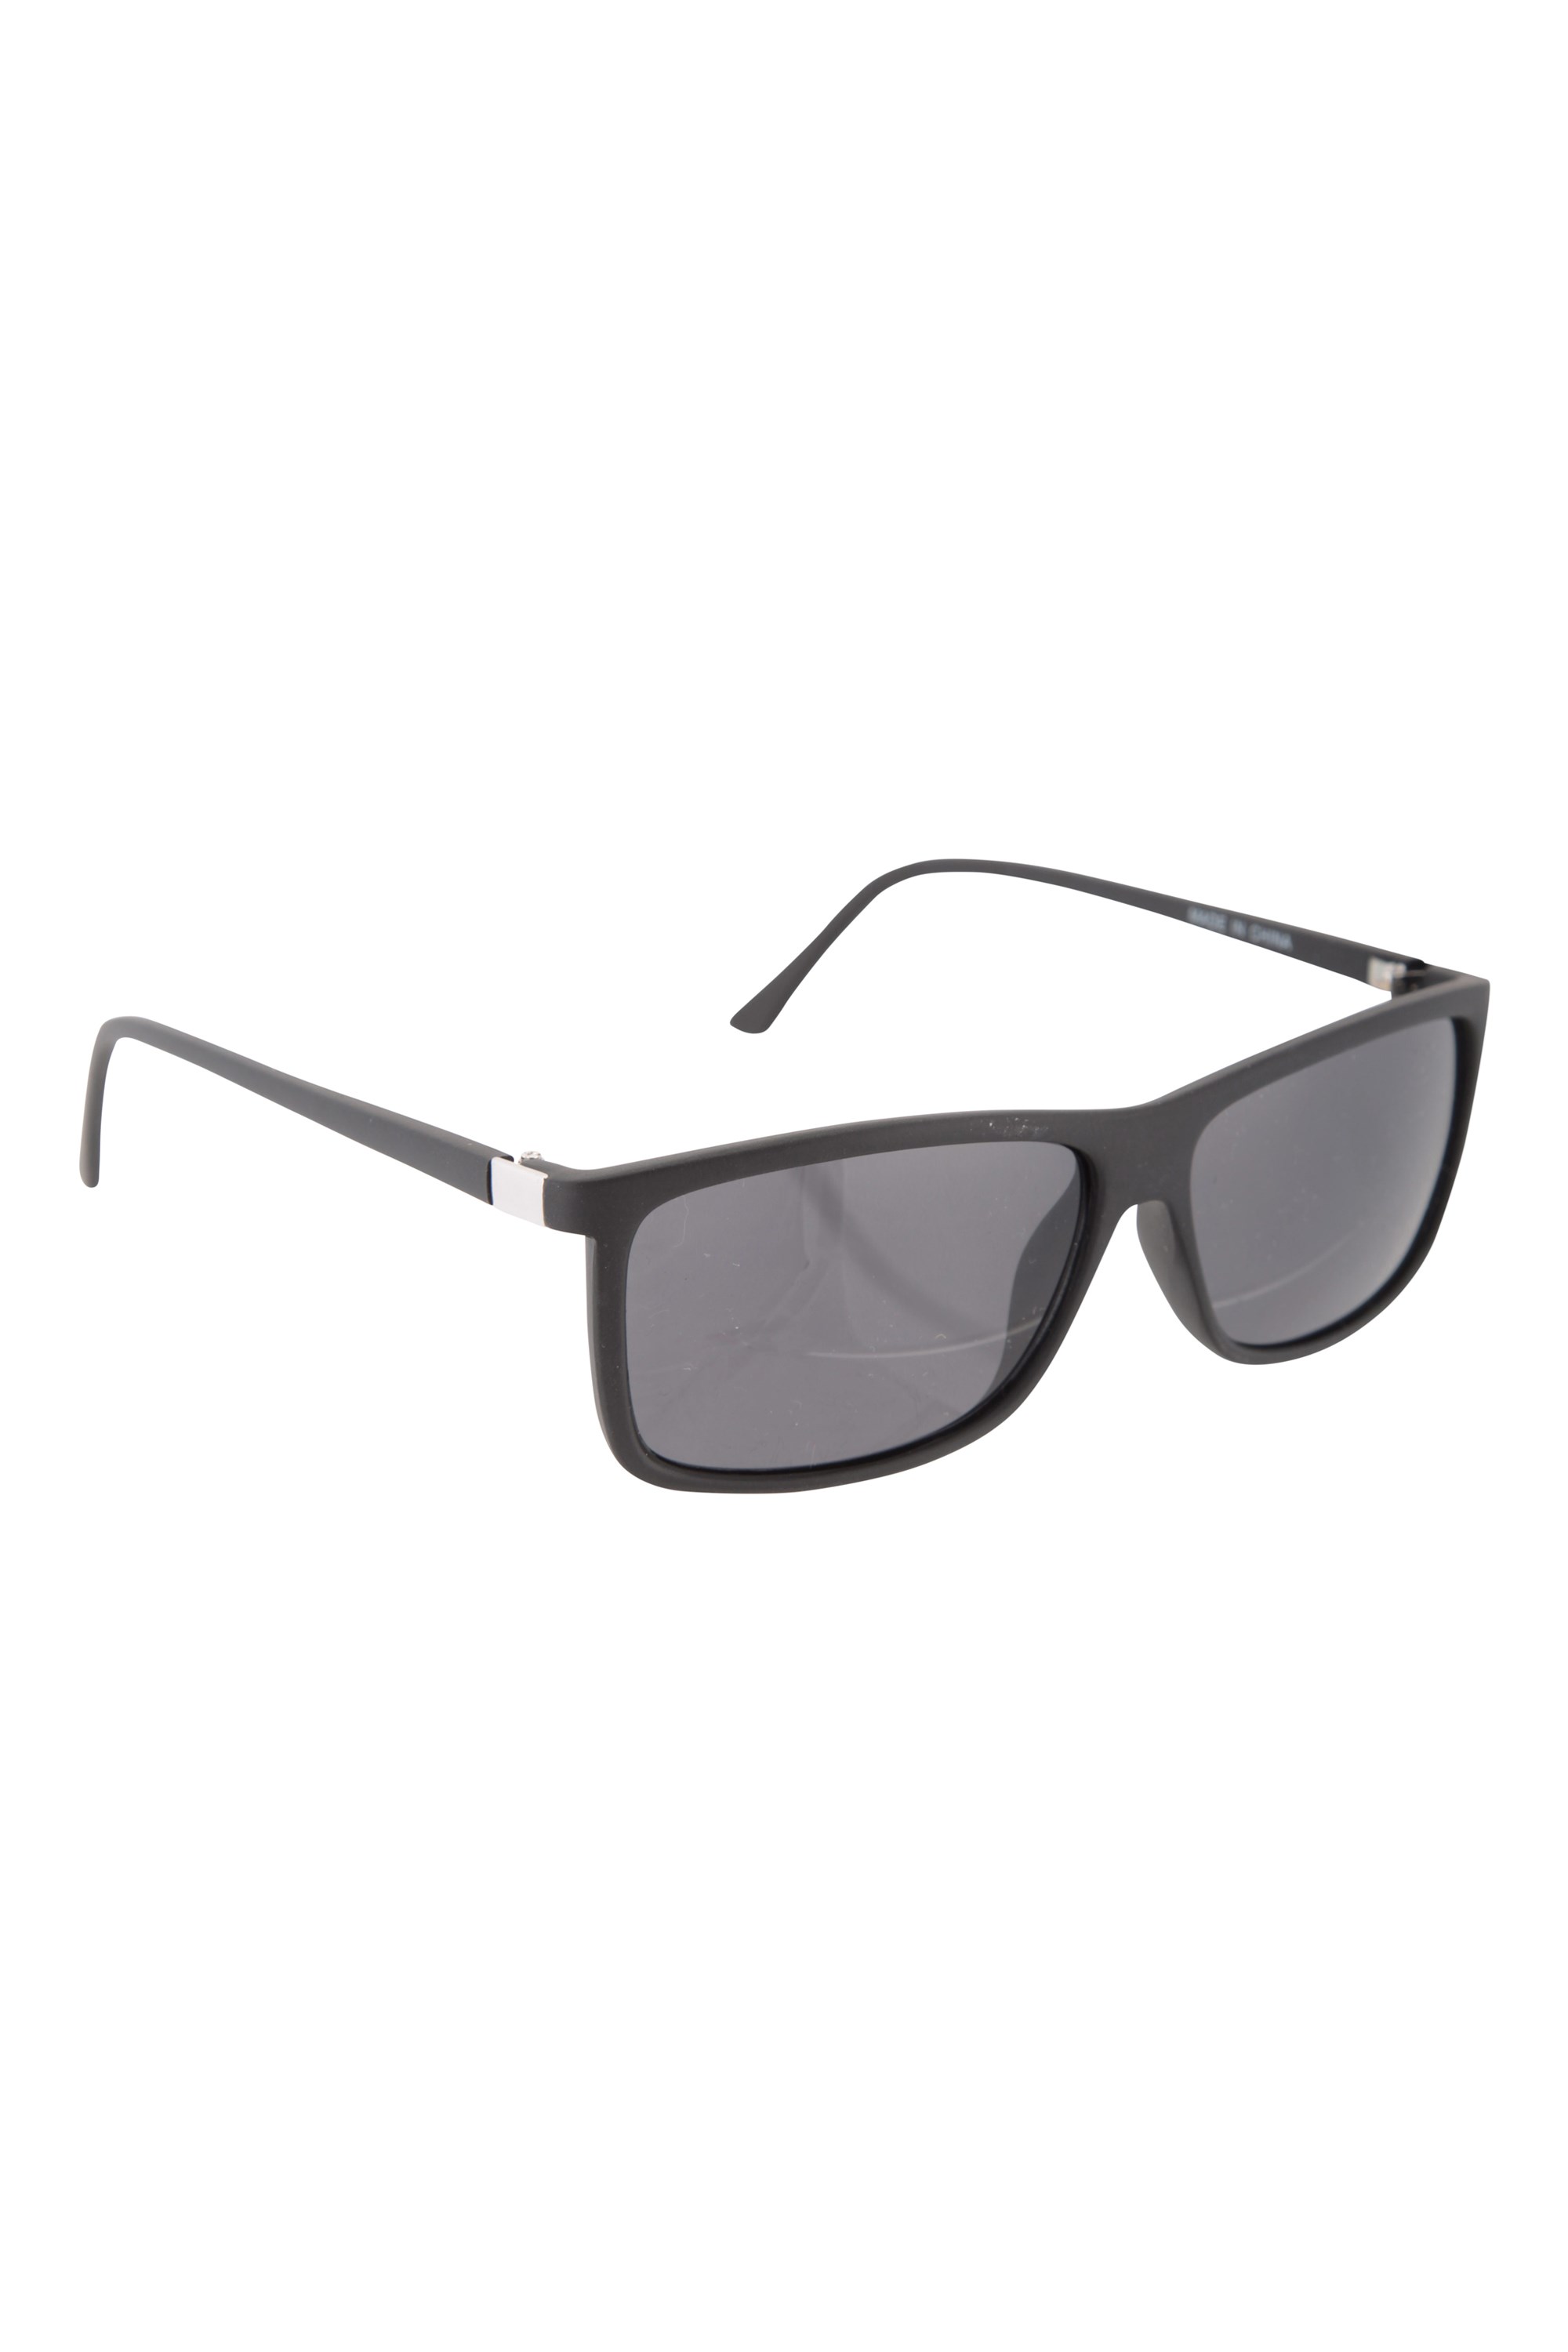 Mountain Warehouse Porto Da Barra Sunglasses - Black | Size ONE